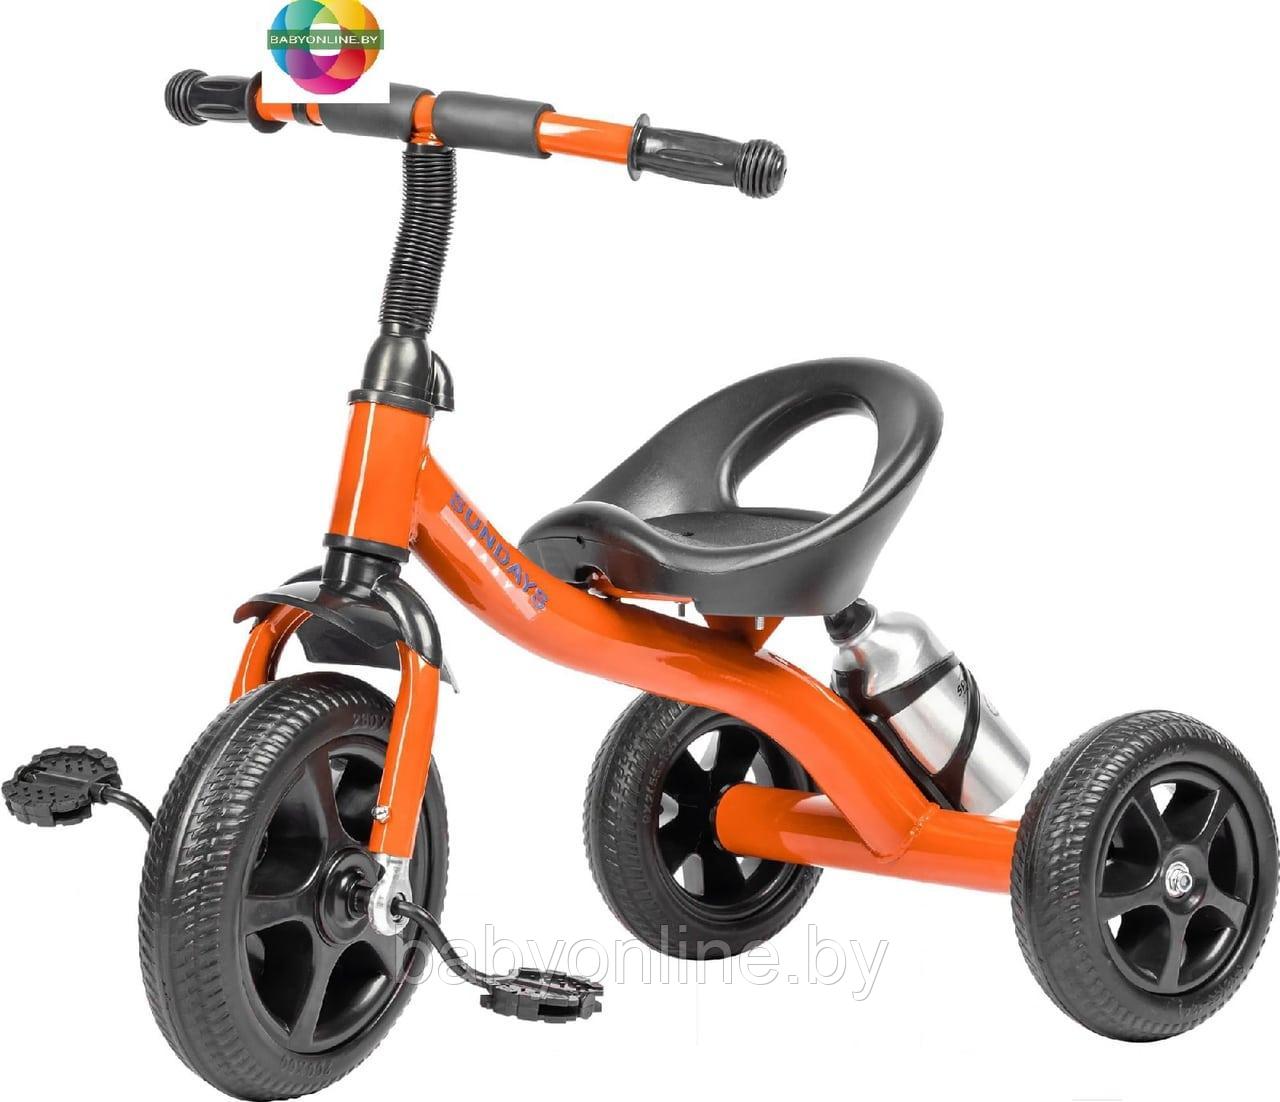 Детский велосипед трехколесный Sundays SJ-SS-19 цвет оранжевый